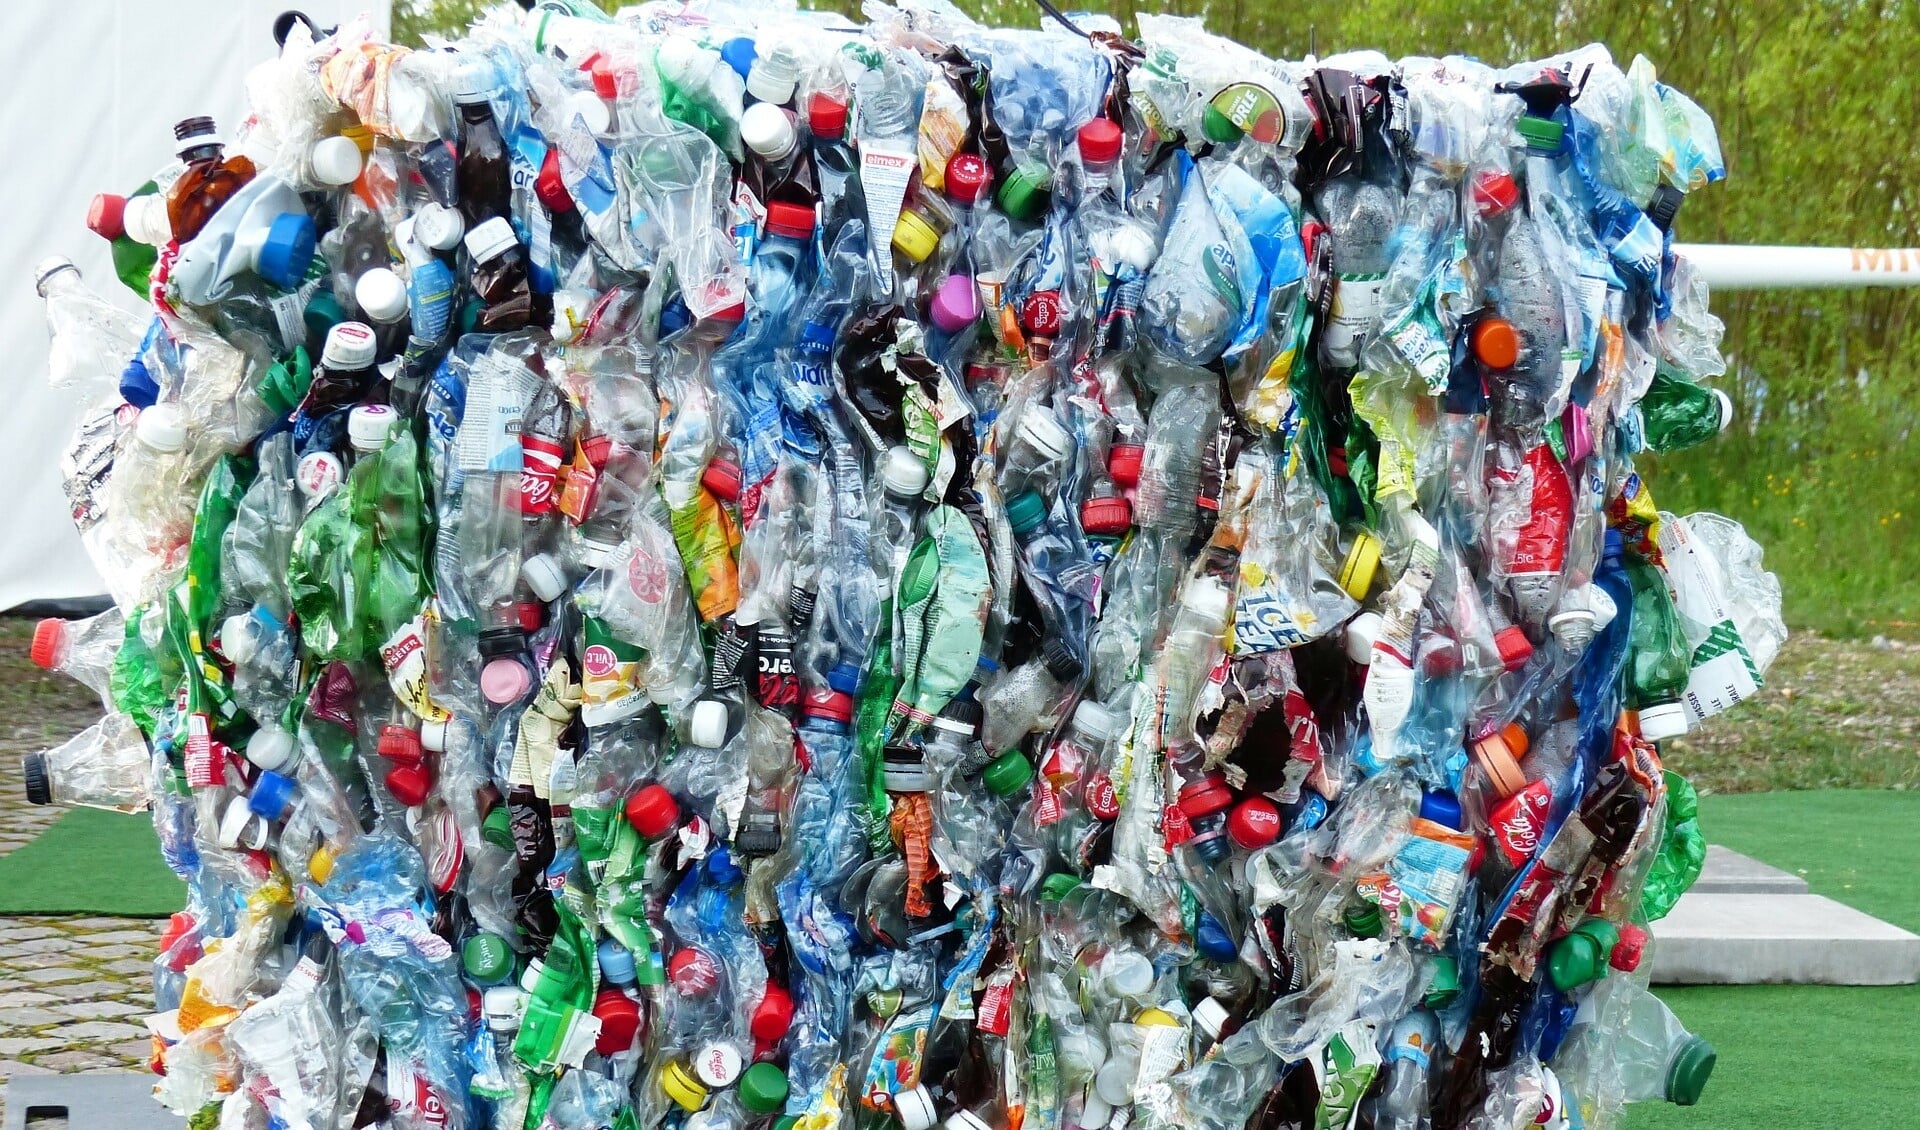 Ingezameld plastic kan opnieuw gebruikt worden.